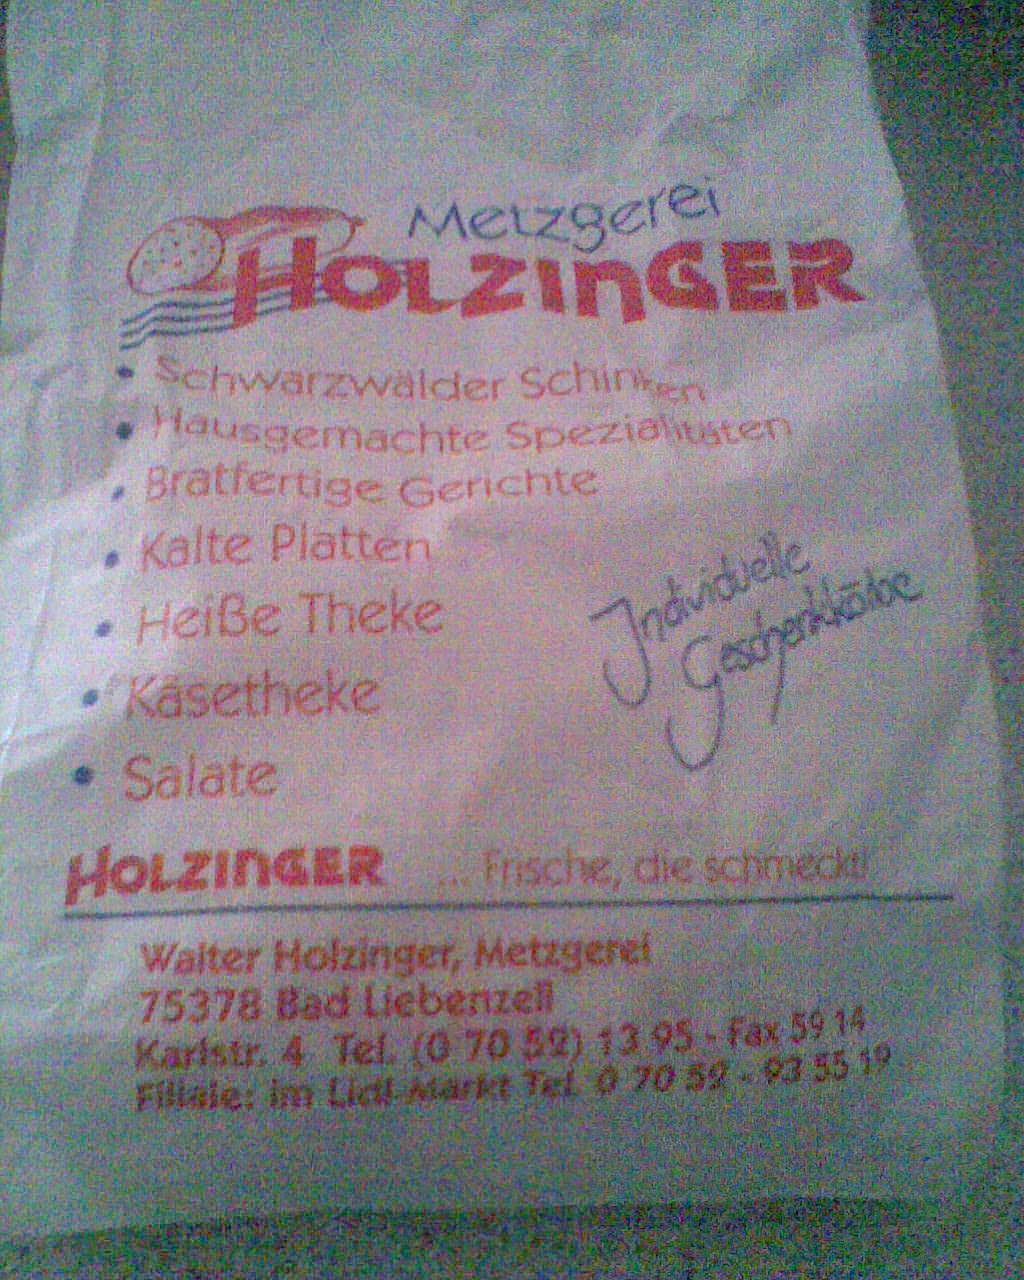 Bild 2 Holzinger Walter Metzgerei GmbH in Bad Liebenzell